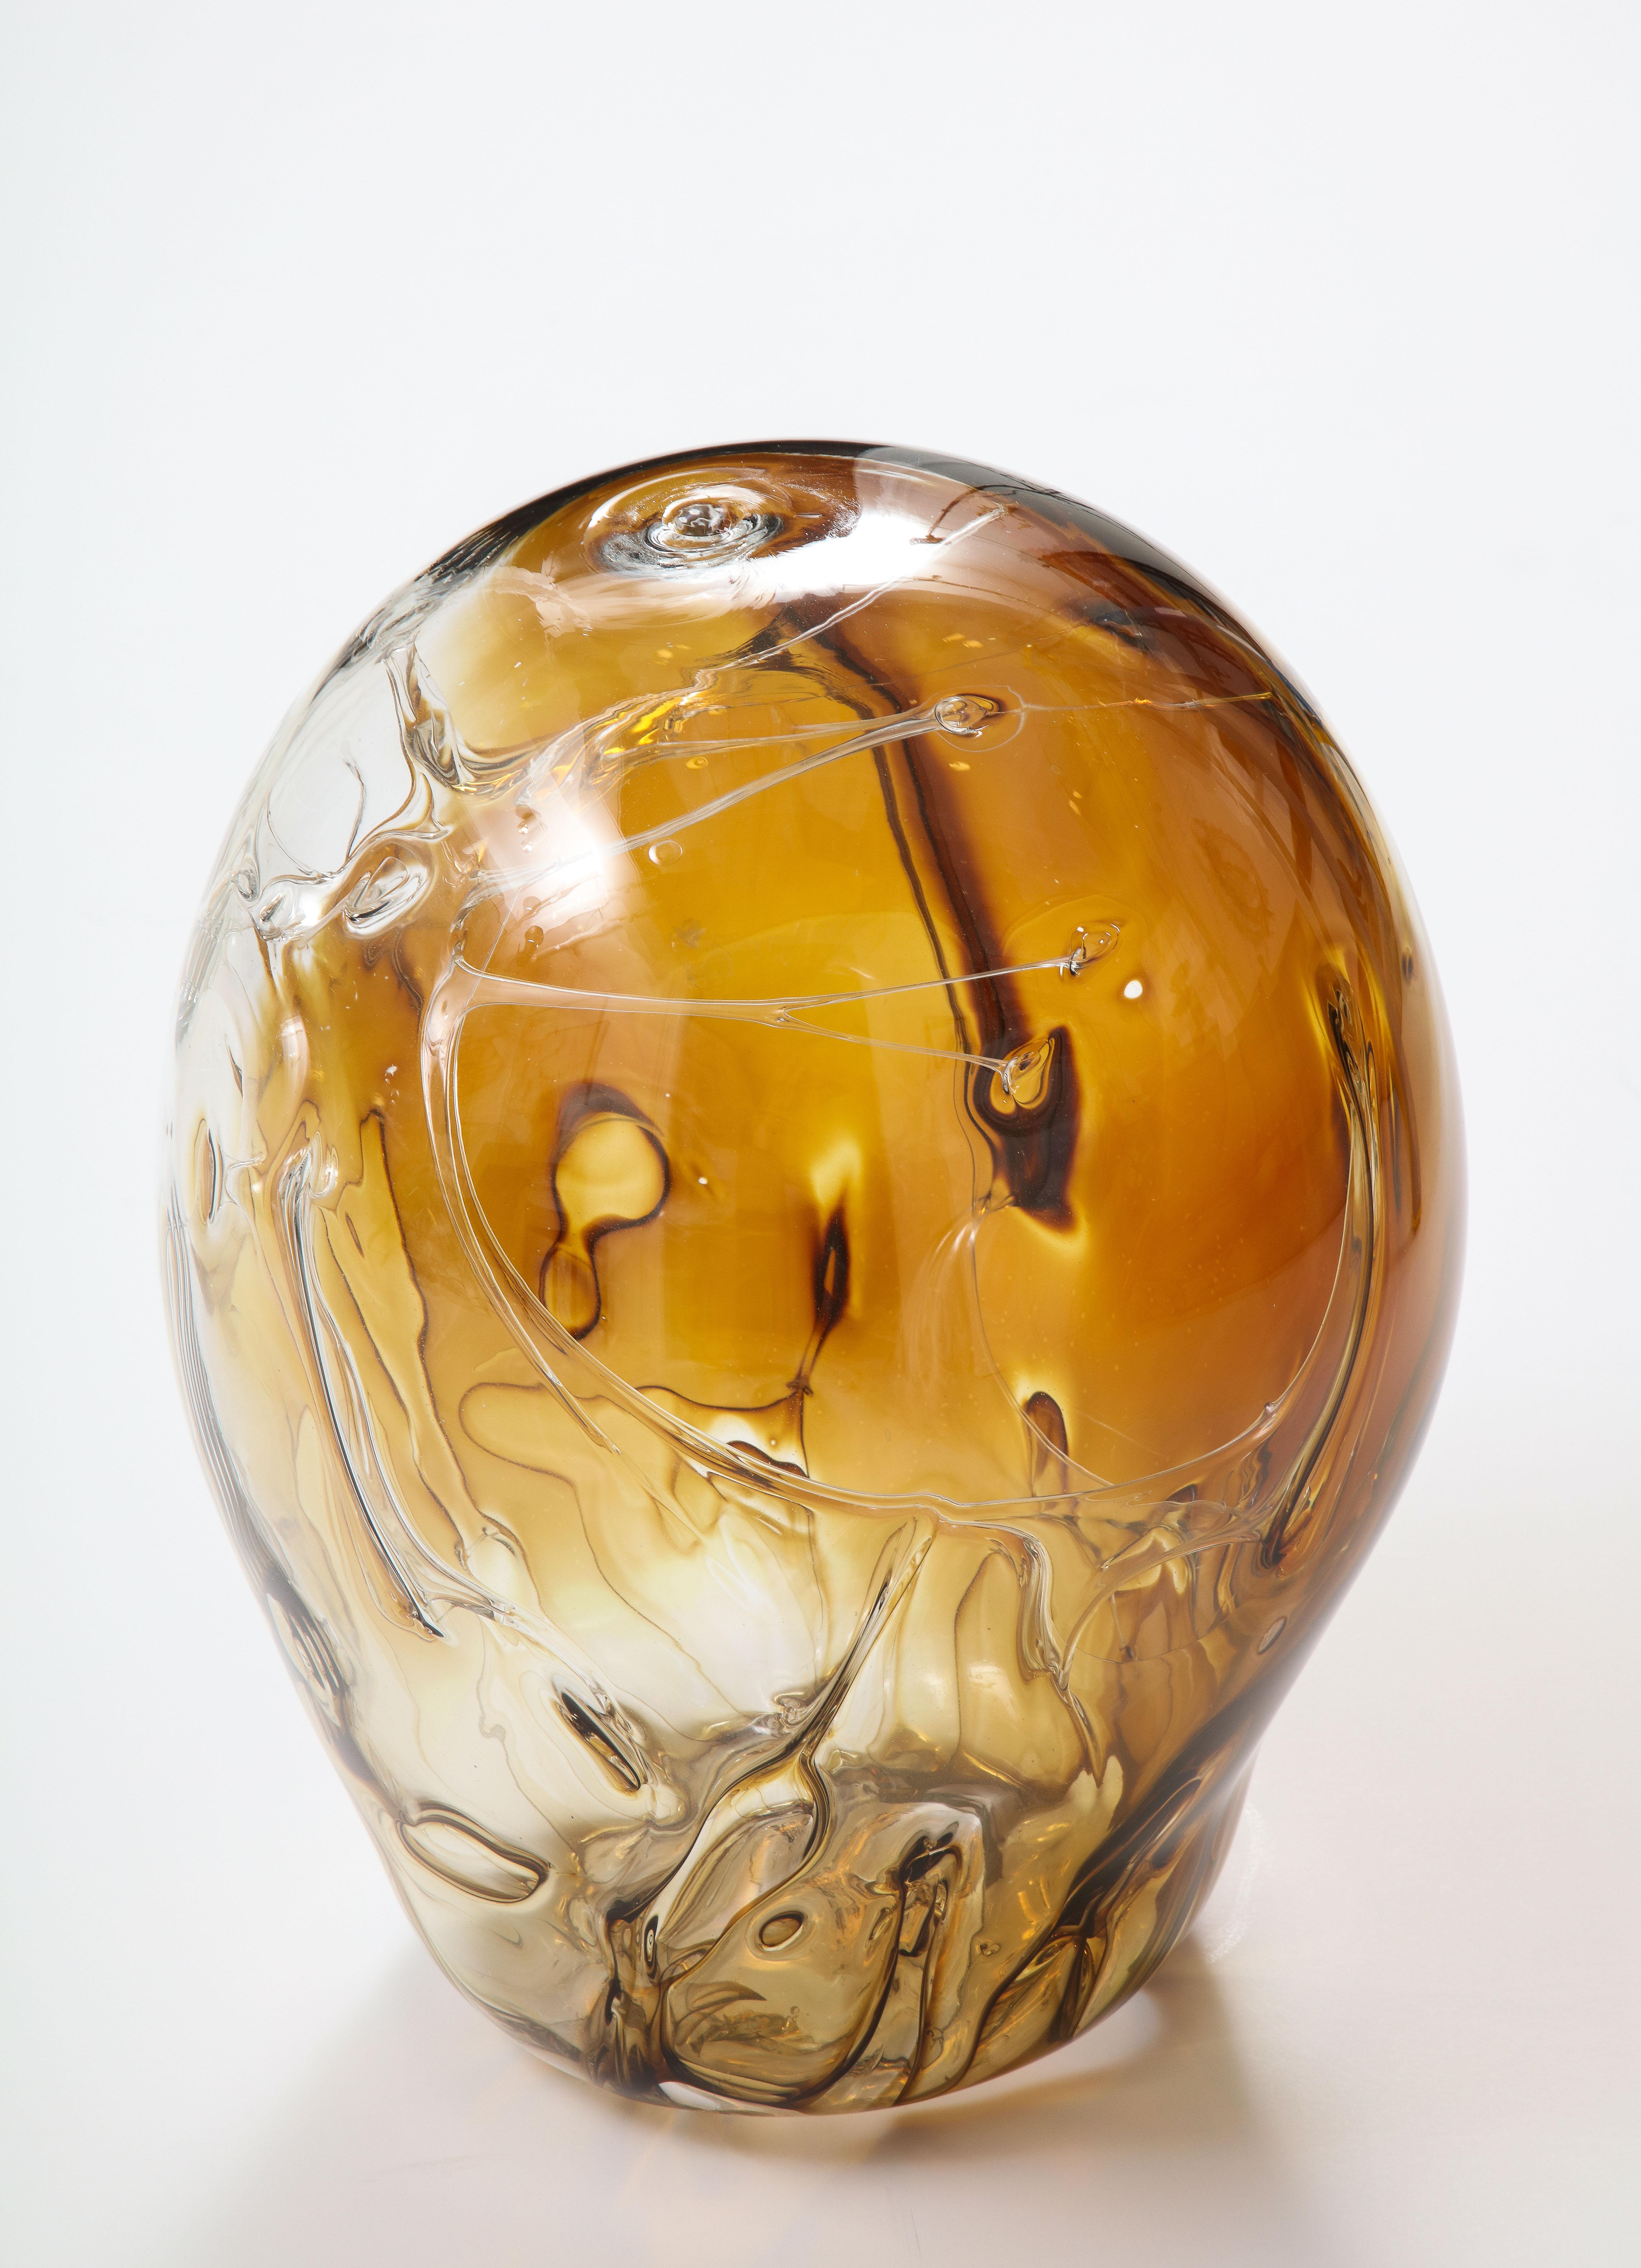 Très grande sculpture en verre soufflé à la bouche de Peter Bramhall.
Combinaison de couleurs rares dans les tons d'ambre et de brun avec des fils de verre internes,
Signé et daté en bas.